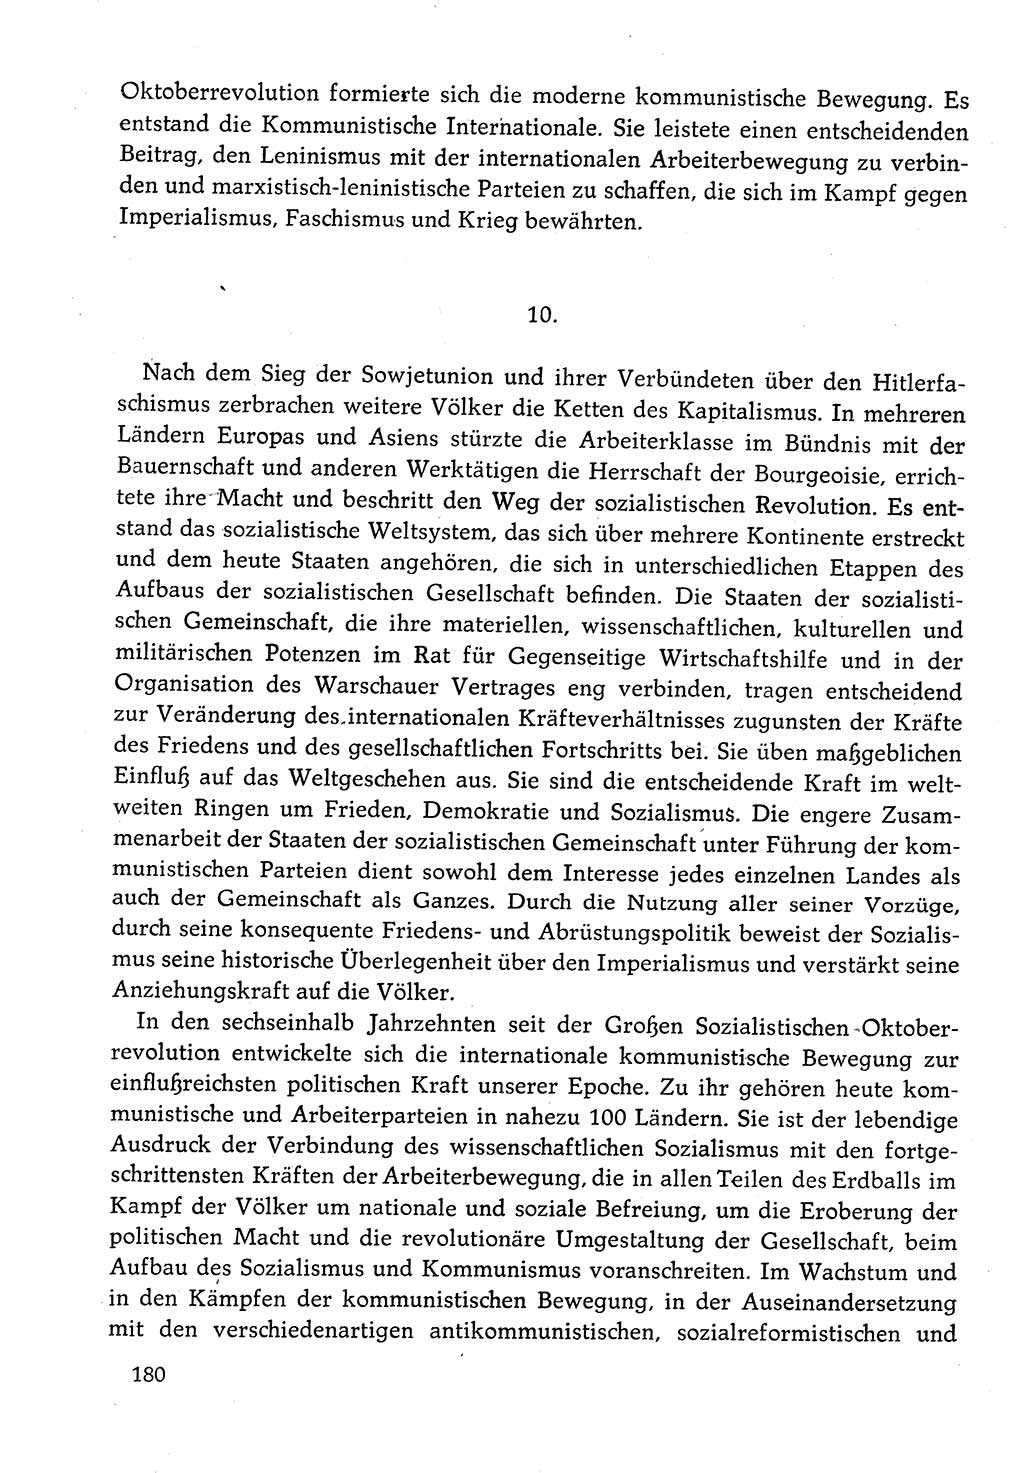 Dokumente der Sozialistischen Einheitspartei Deutschlands (SED) [Deutsche Demokratische Republik (DDR)] 1982-1983, Seite 180 (Dok. SED DDR 1982-1983, S. 180)